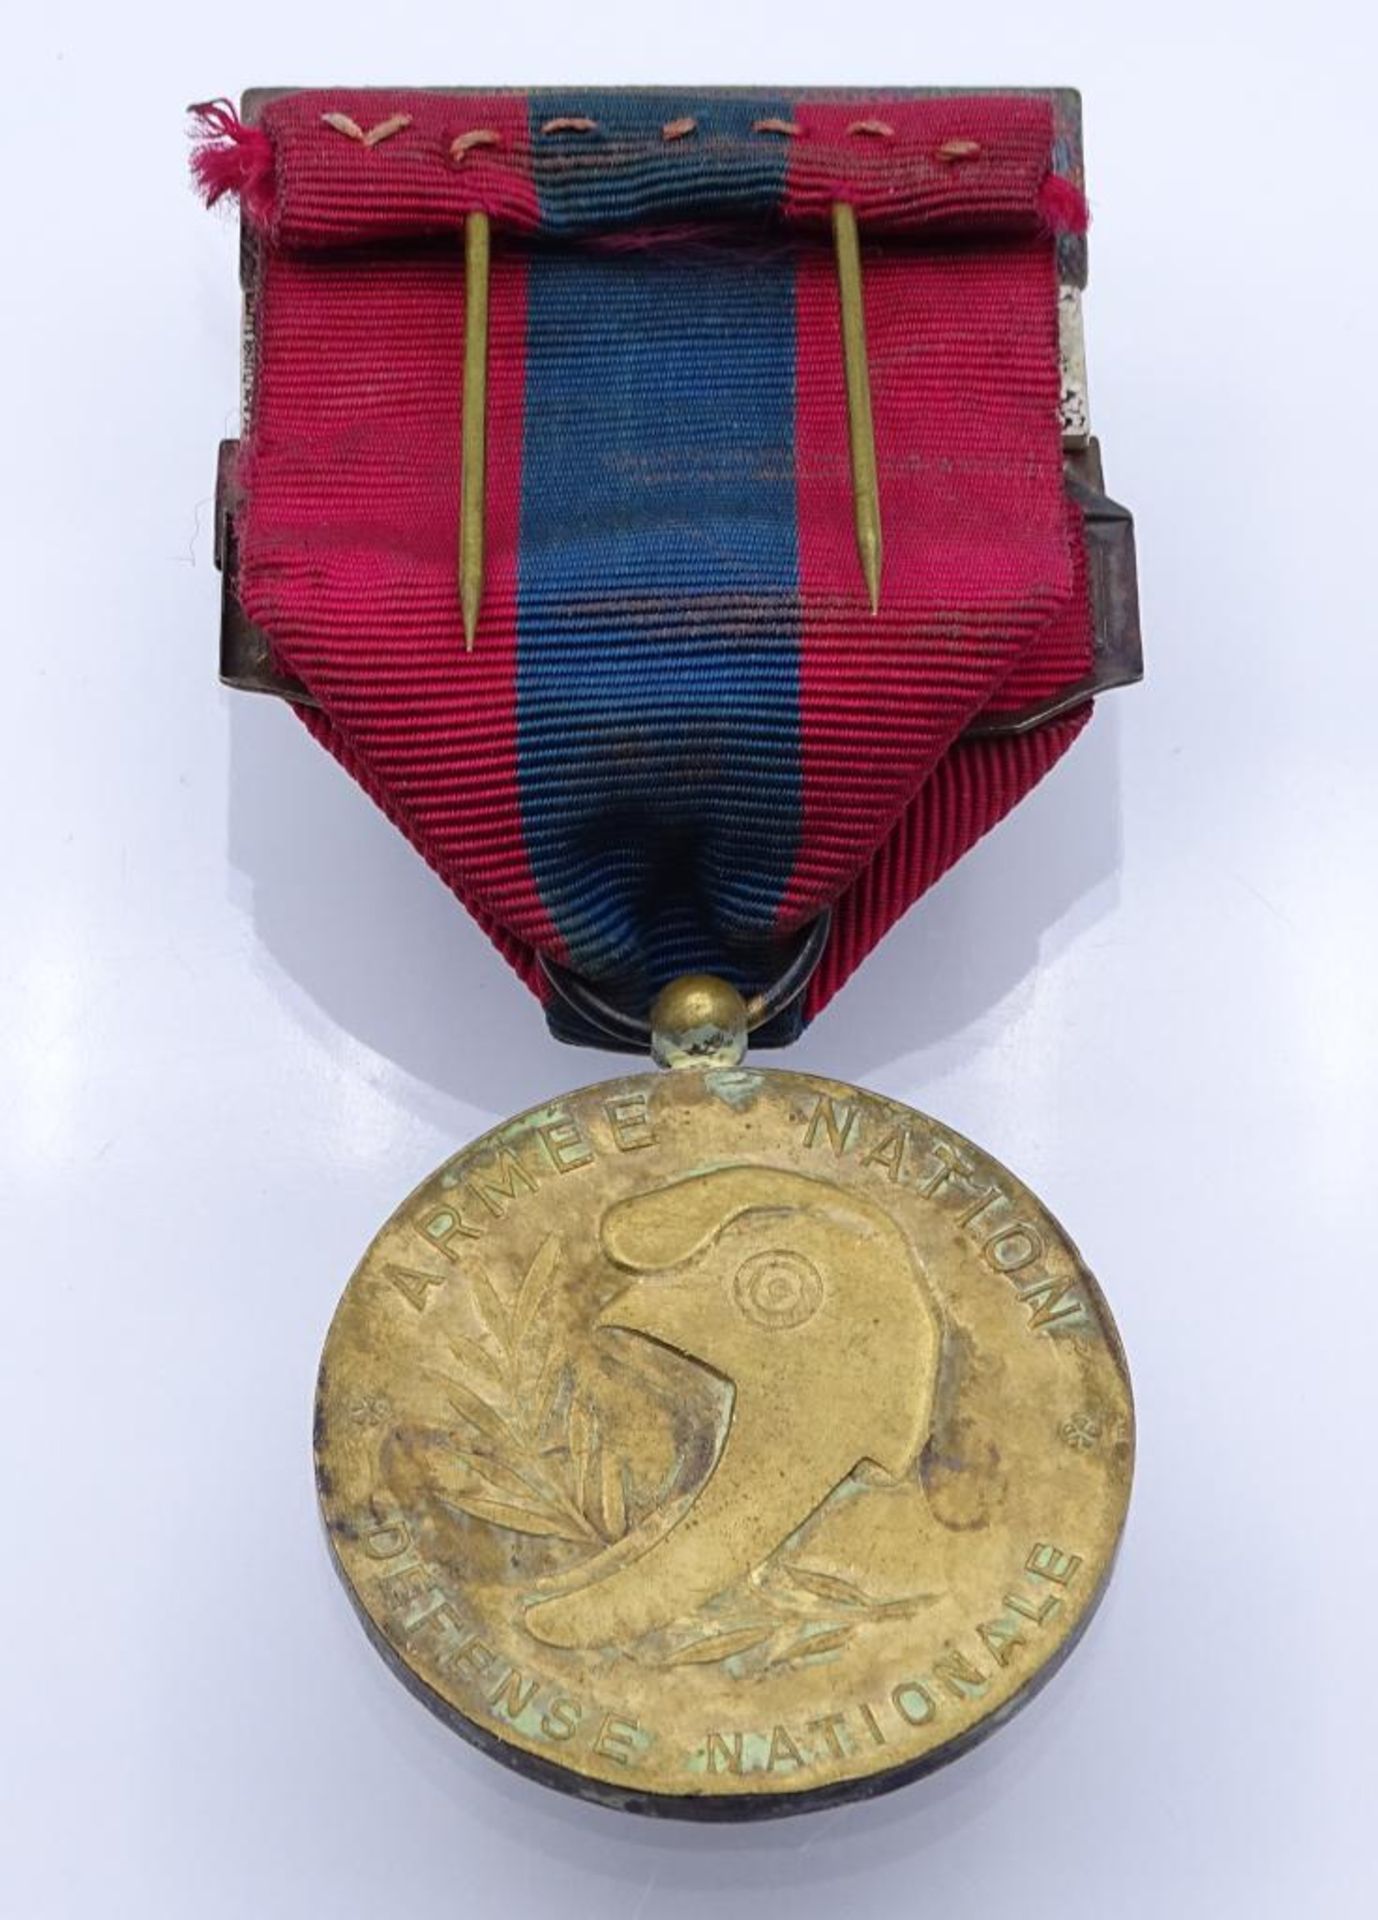 Medaille der Landesverteidigung-Fremdenlegion franz.Armee Tätigkeiten: Seetruppen, Kampfschwimmer, - Image 4 of 4